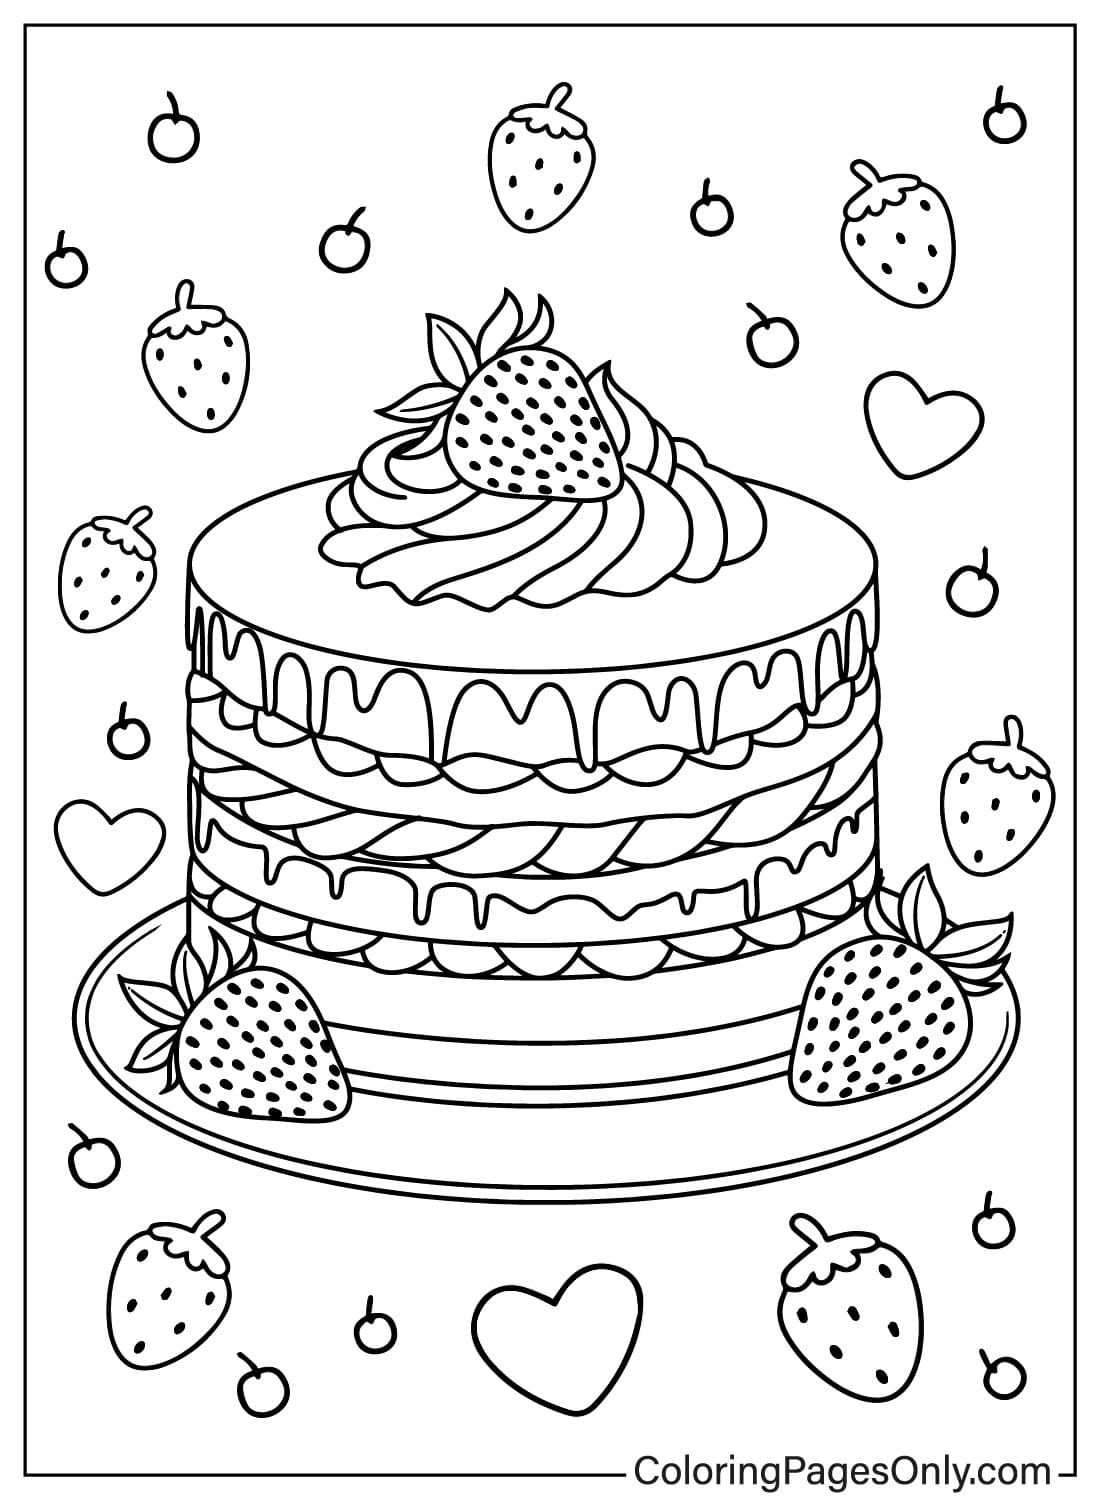 Раскраска Торт ко дню рождения, которую можно распечатать бесплатно от Birthday Cake